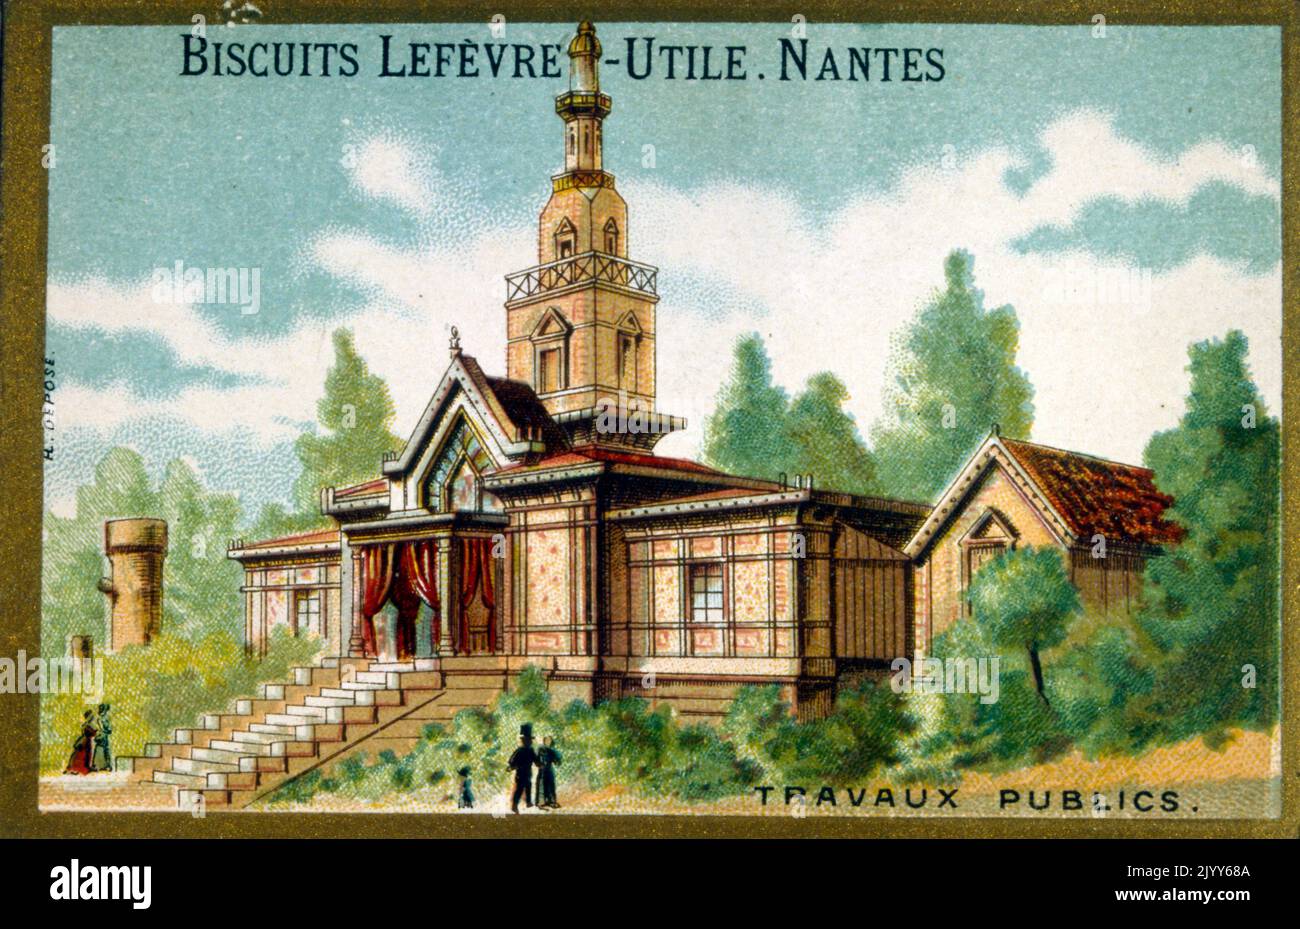 Image de l'usine de biscuits Lefevre-Utile à Nantes; image commémorative des travaux publics. Banque D'Images